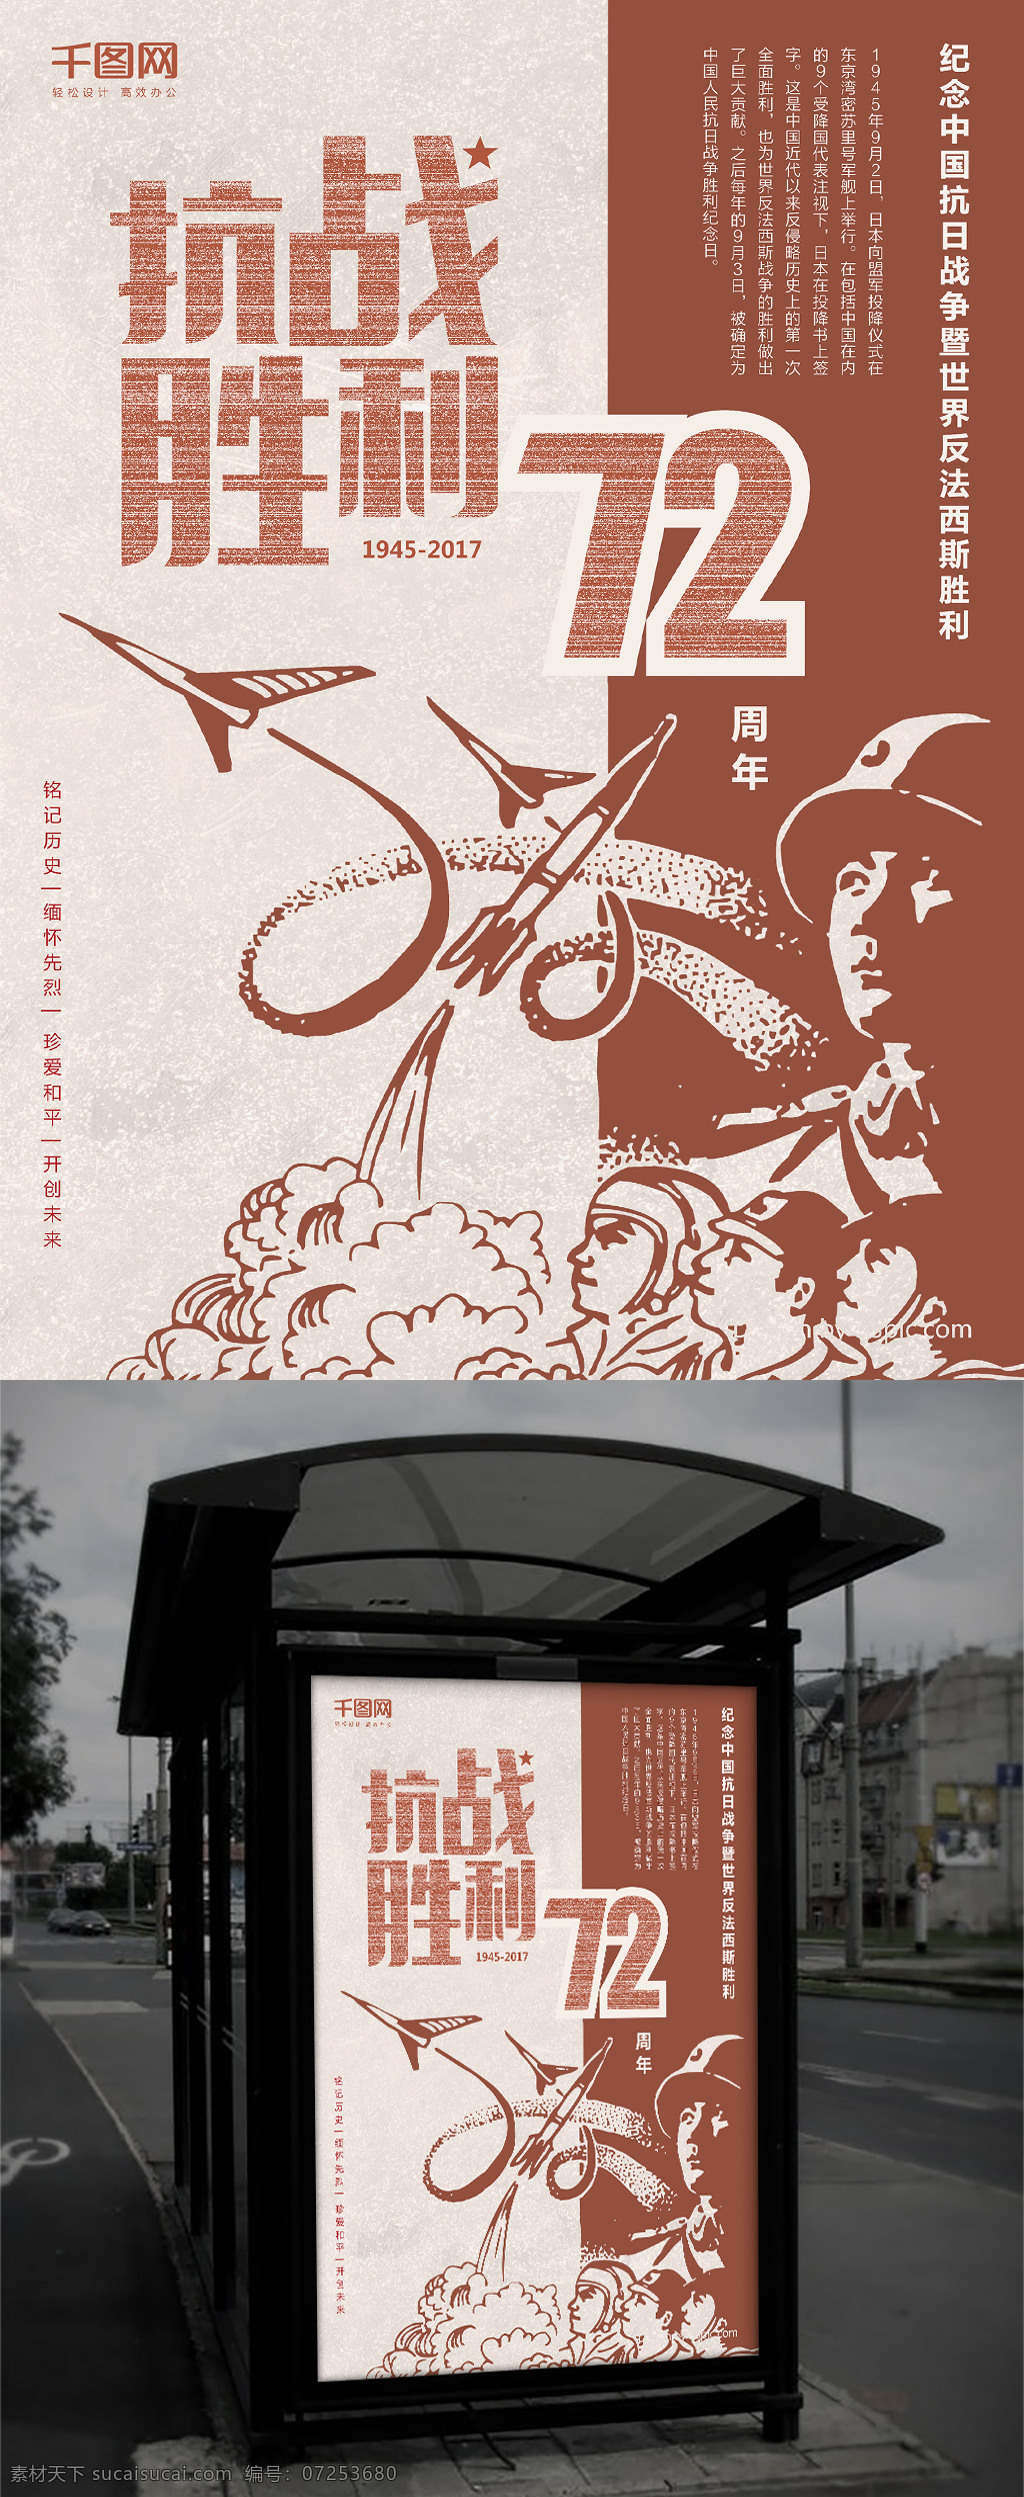 怀旧 线描 风格 抗战 胜利 周年 党建 纪念 海报 抗日 反法西斯 抗战胜利 72周年 复古